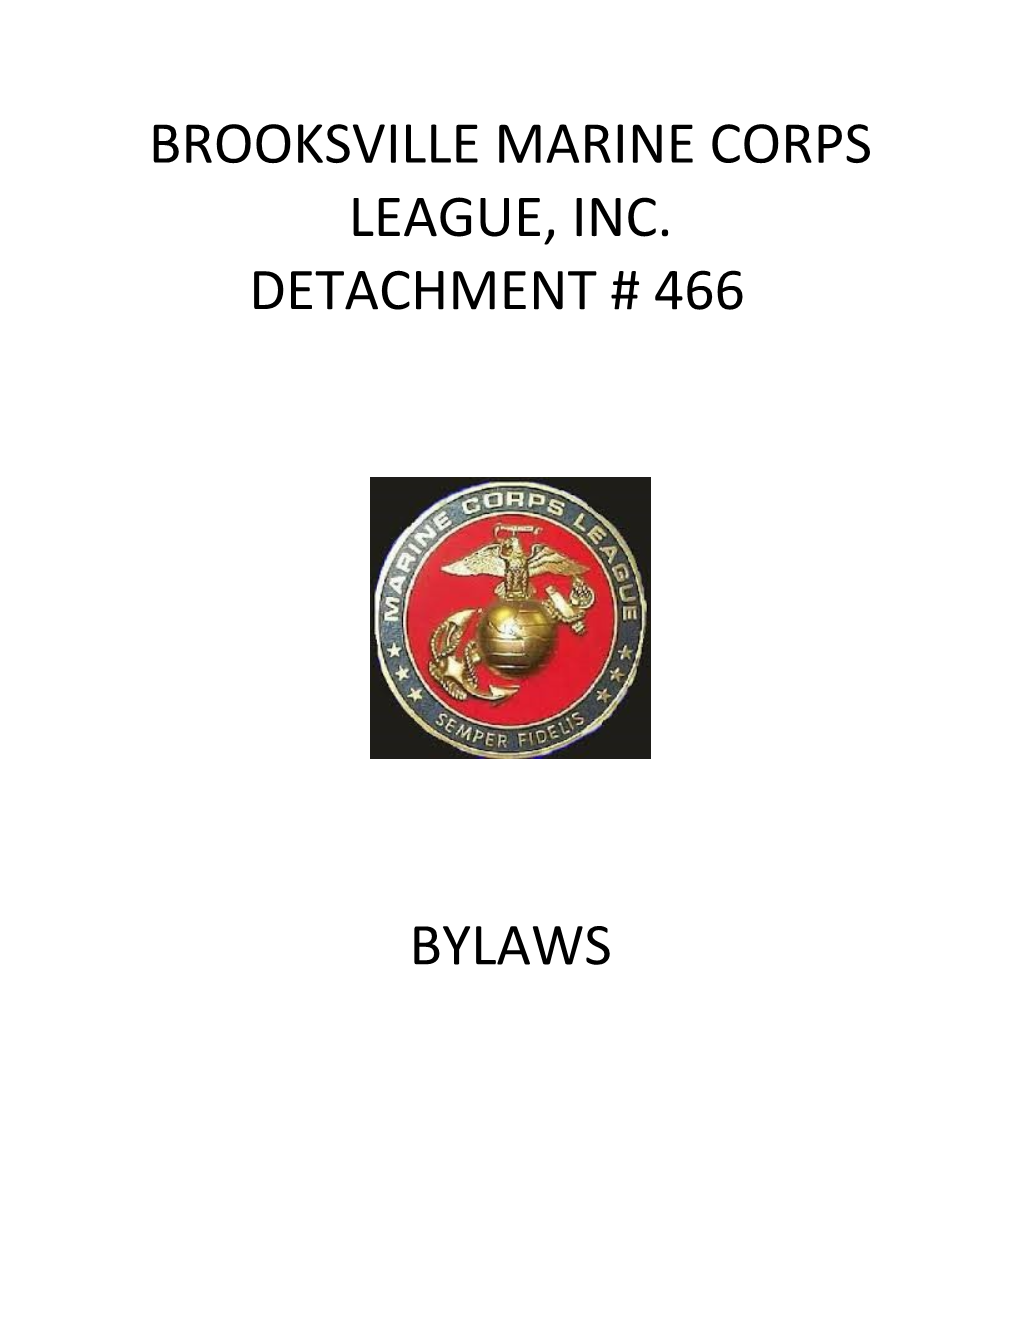 Brooksville Marine Corps League, Inc